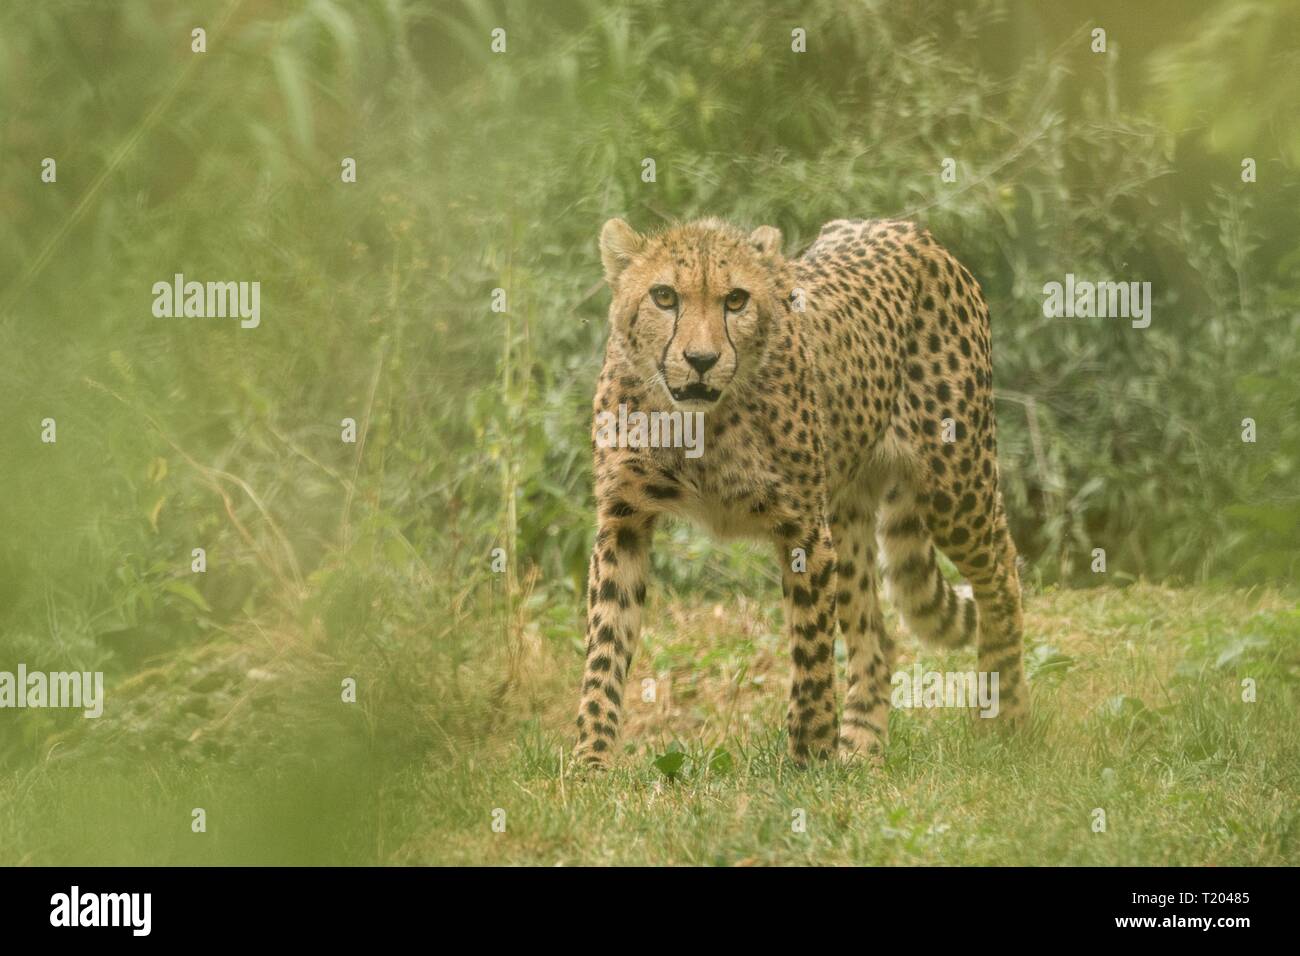 Ghepardo (Acinonyx jubatus), bel gatto in cattività allo zoo, big cat giacente su erba, elegante predatore africana Foto Stock